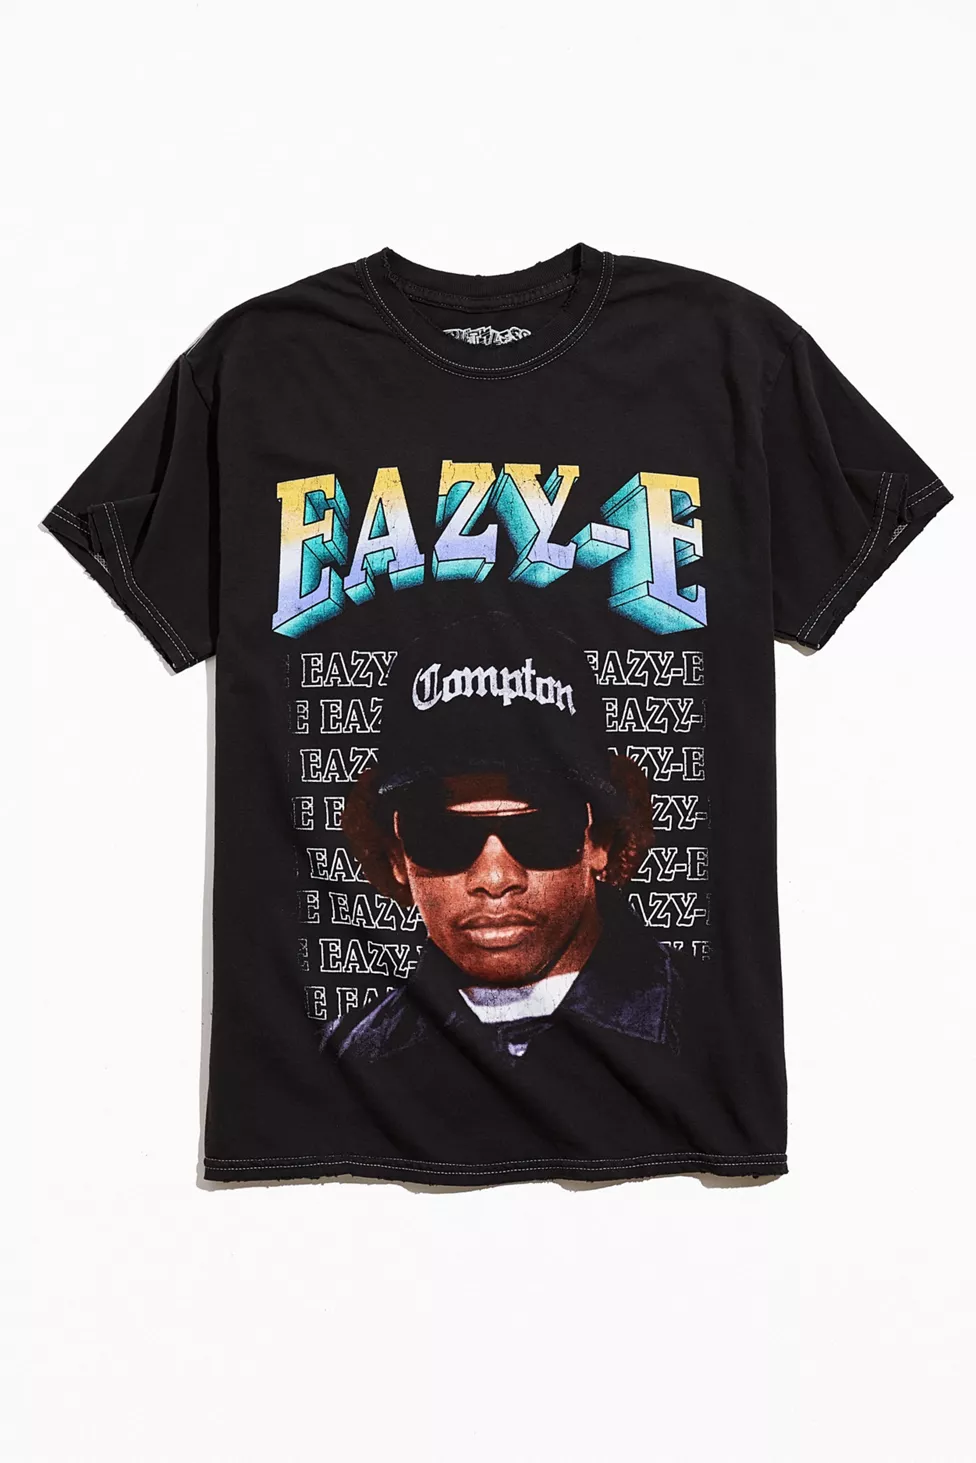 Eazy-E Retro Homage Tee